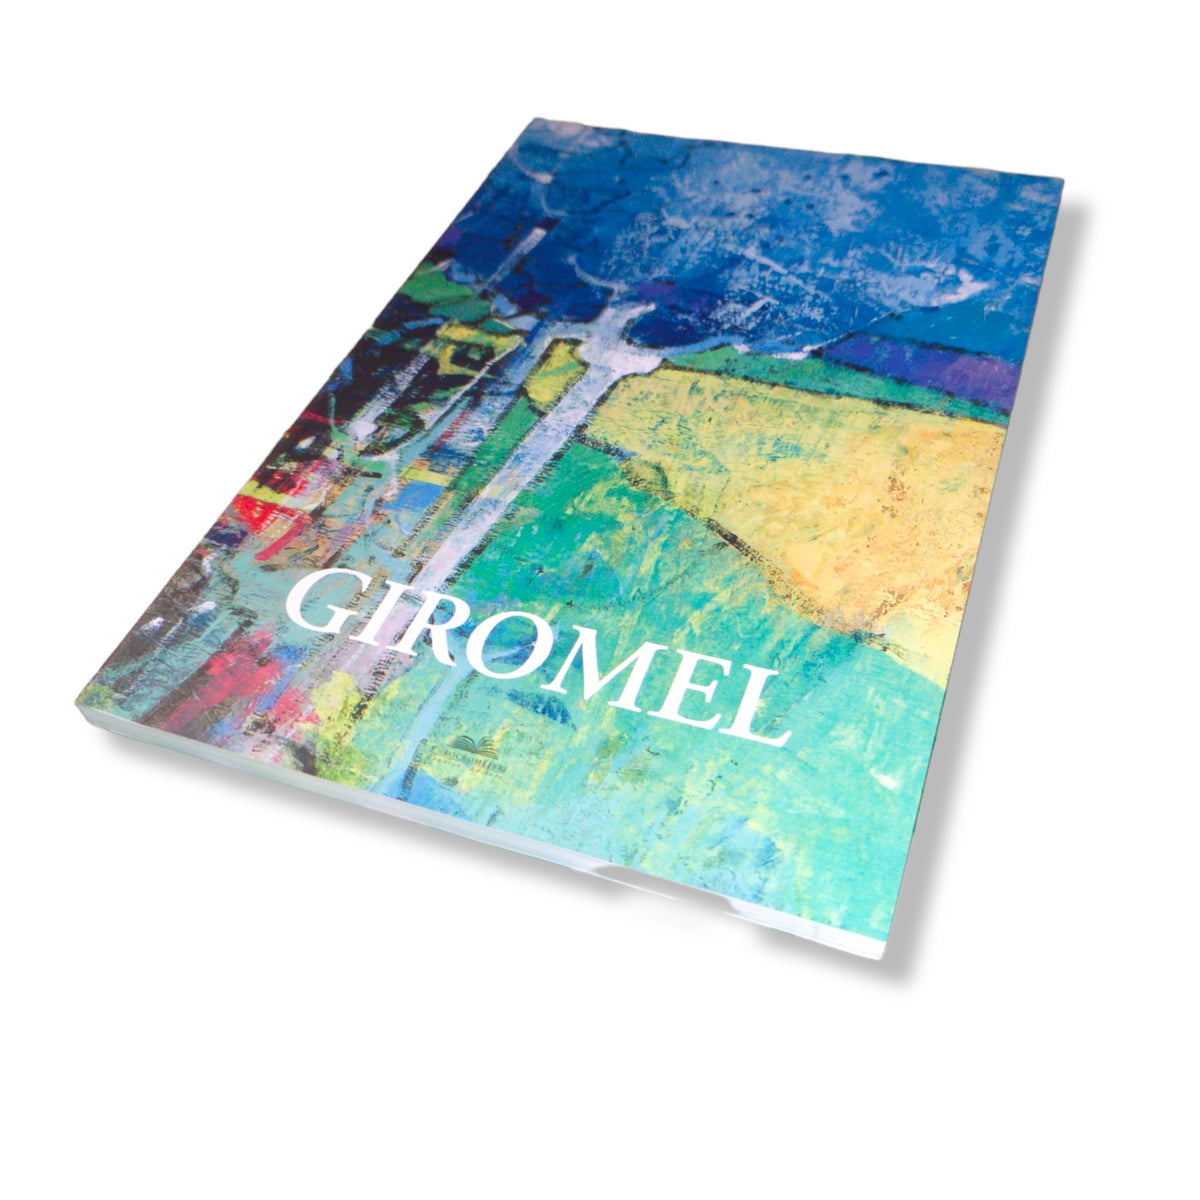 Kompletter Katalog Sergio Giromel